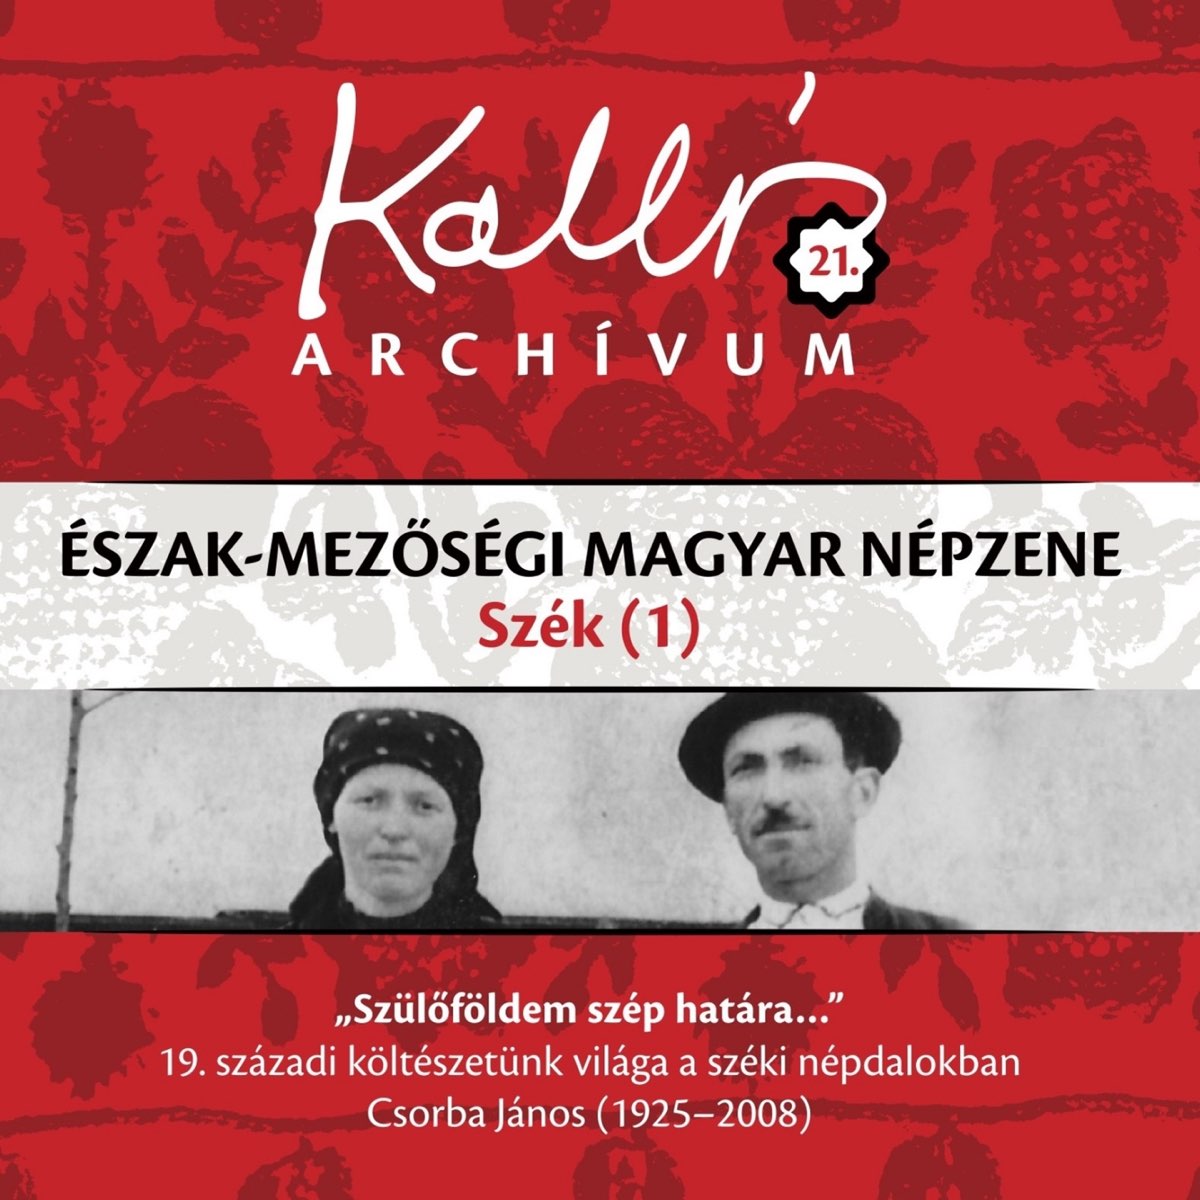 Kallós archívum, Vol. 21 (Észak-mezőségi magyar népzene - Szék 1) by Kallós  Zoltán Gyűjtése on Apple Music